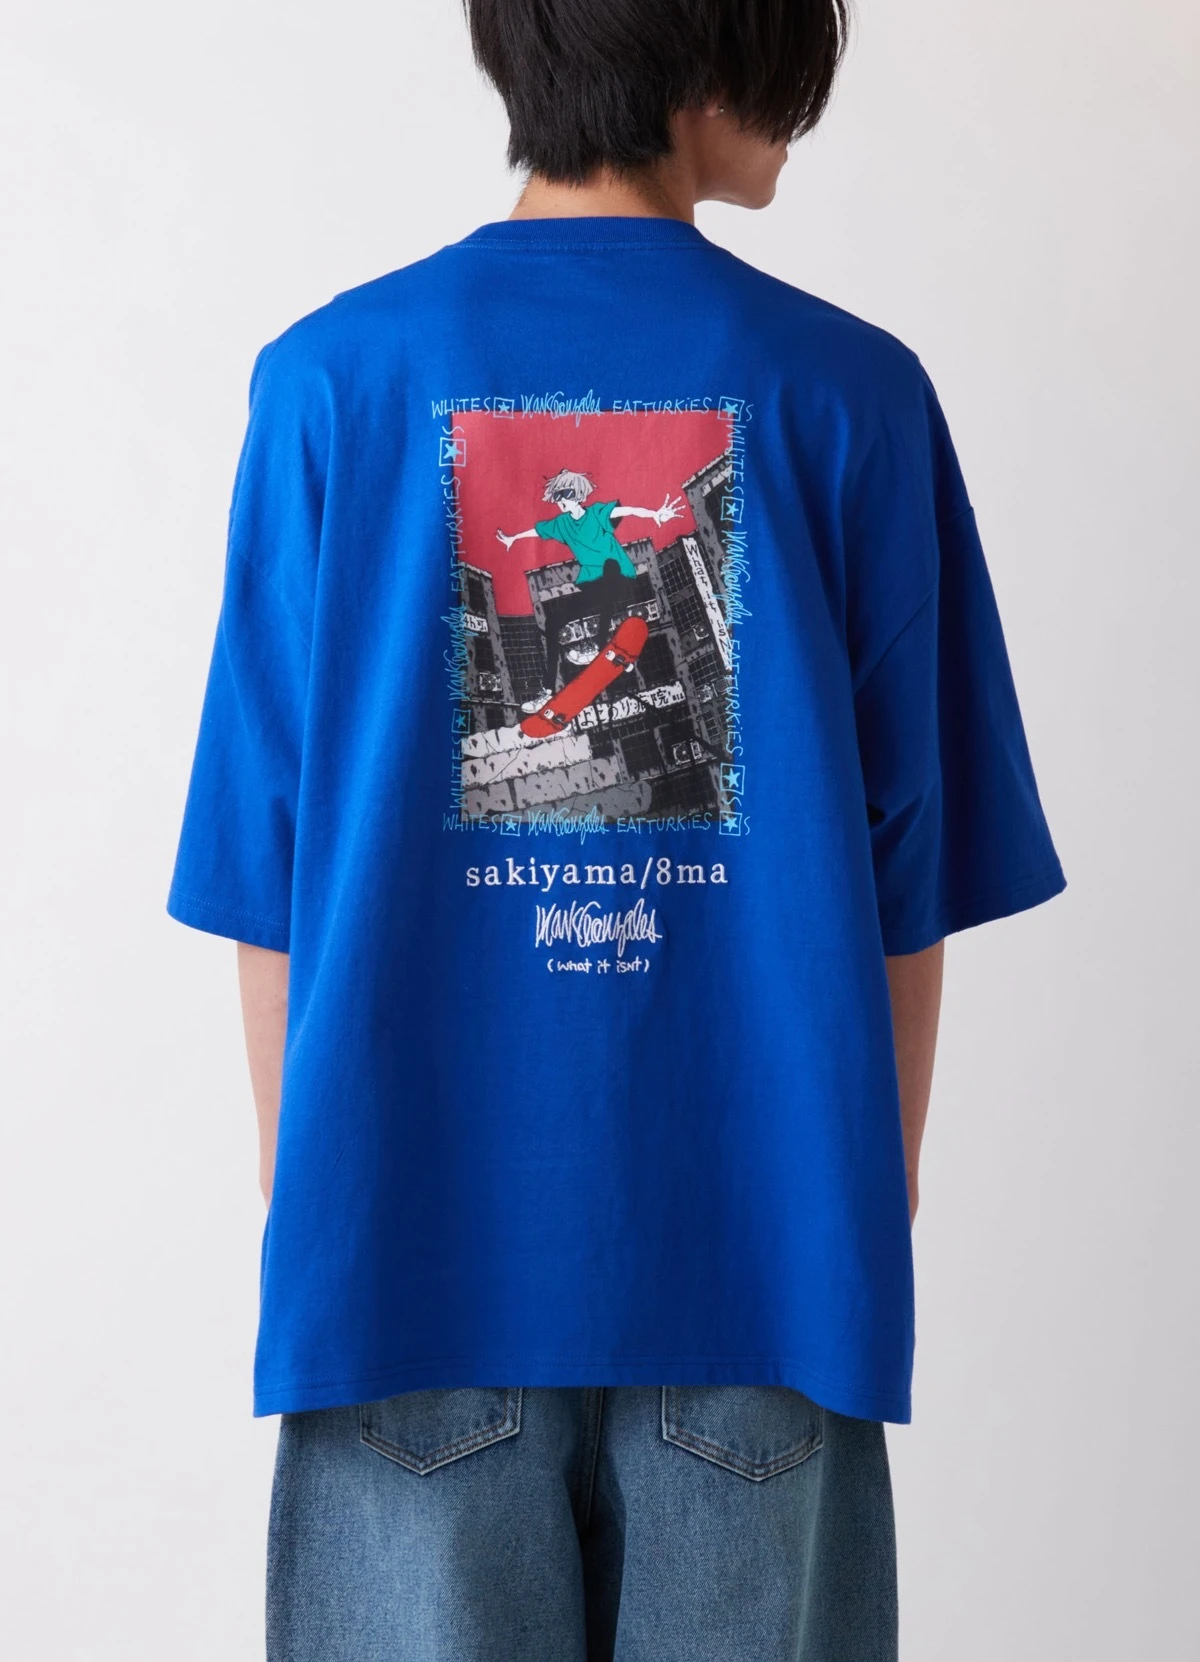 イラストレーターsakiyamaのTシャツ、数量限定で発売 （What it isNt）コラボ